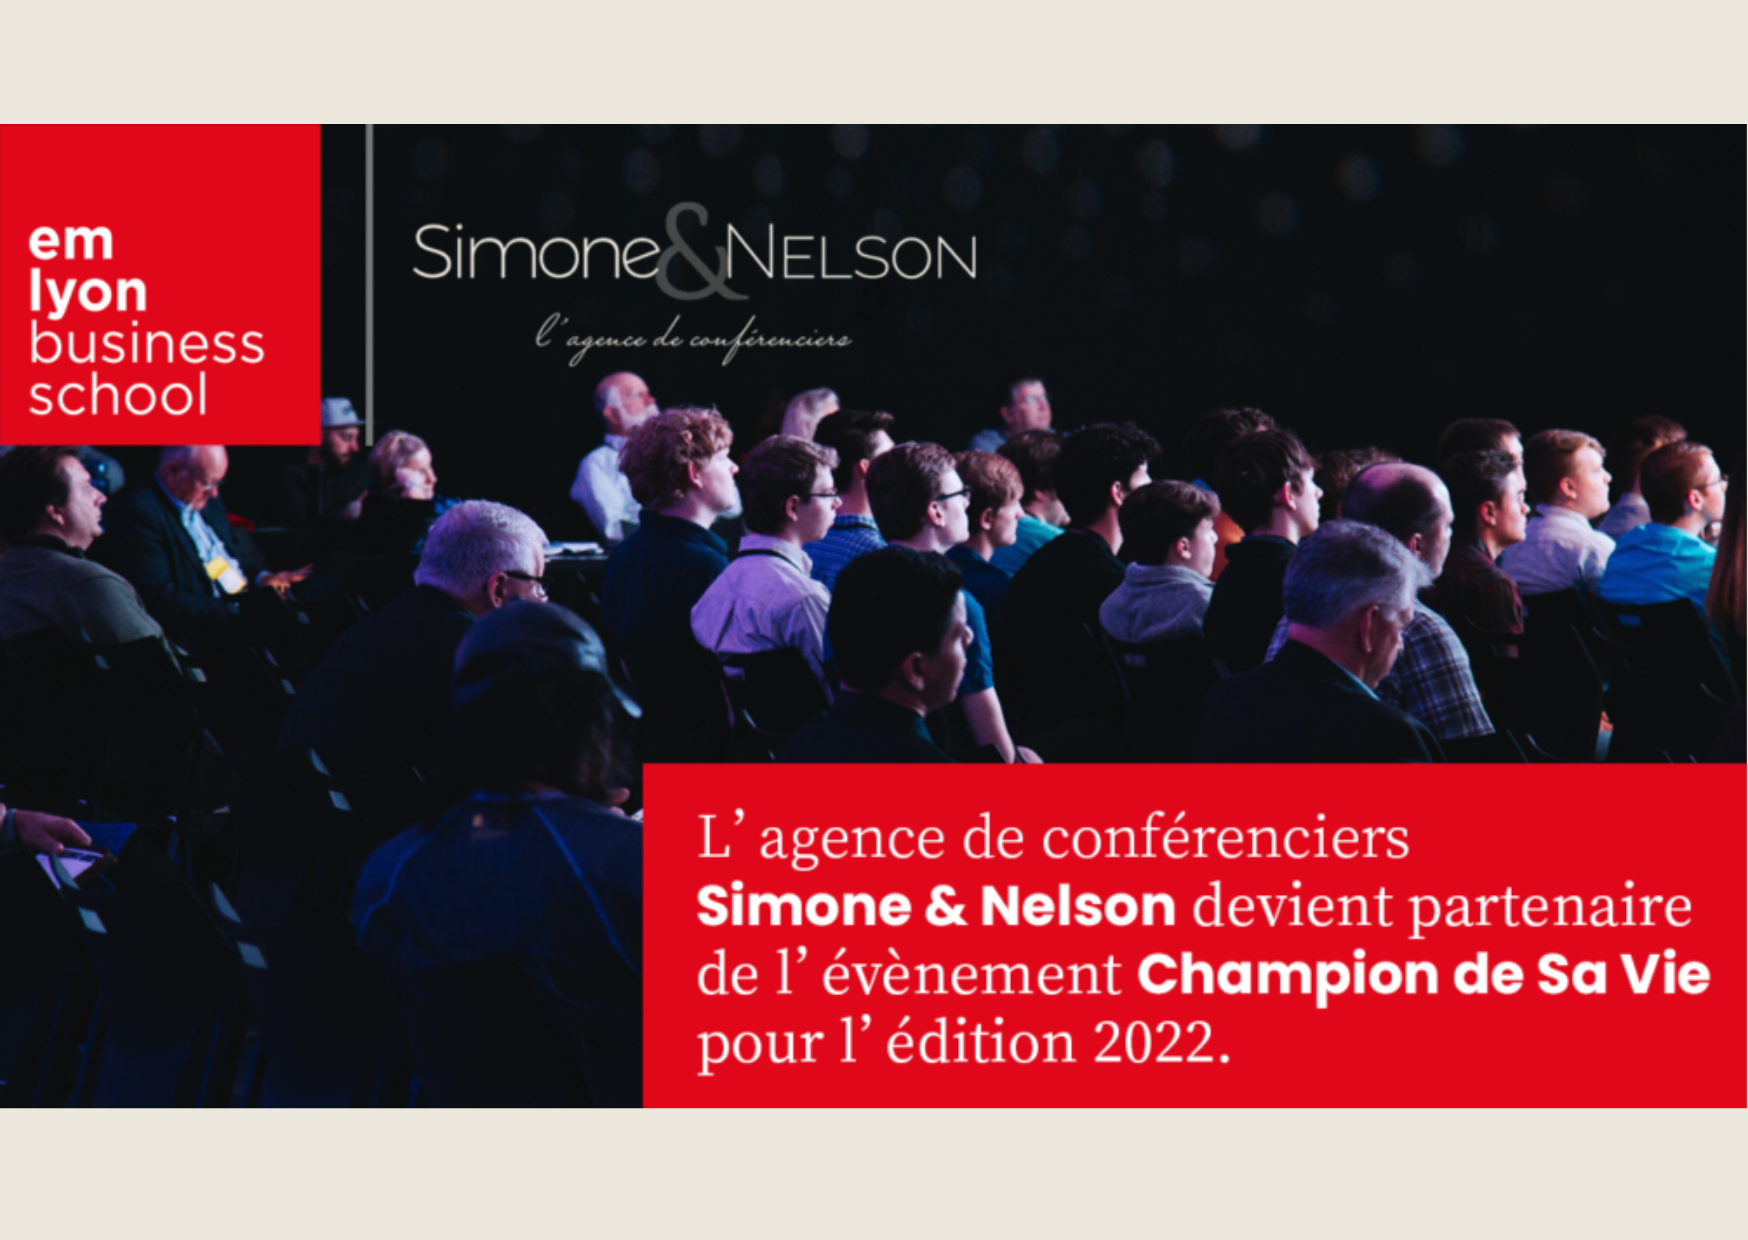 Simone & Nelson devient partenaire de l’évènement champion de sa vie de l’emlyon